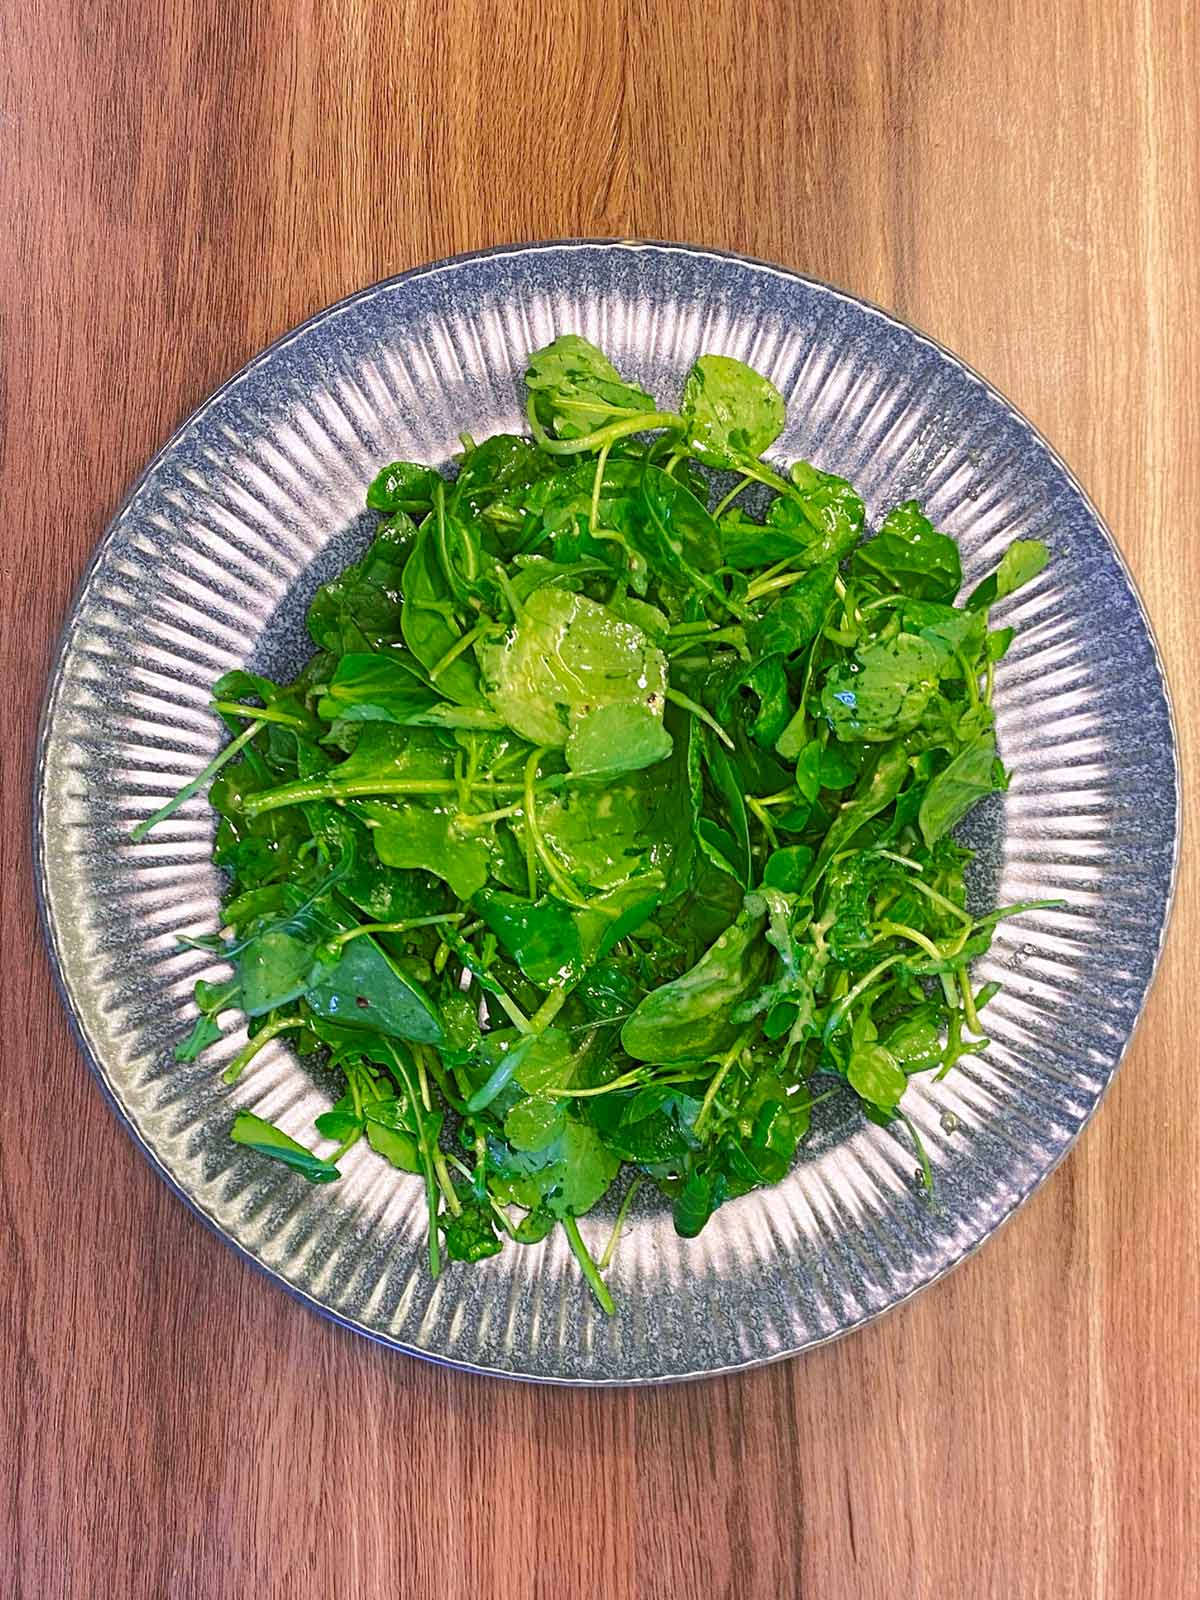 Dressed salad leaves on a plate.